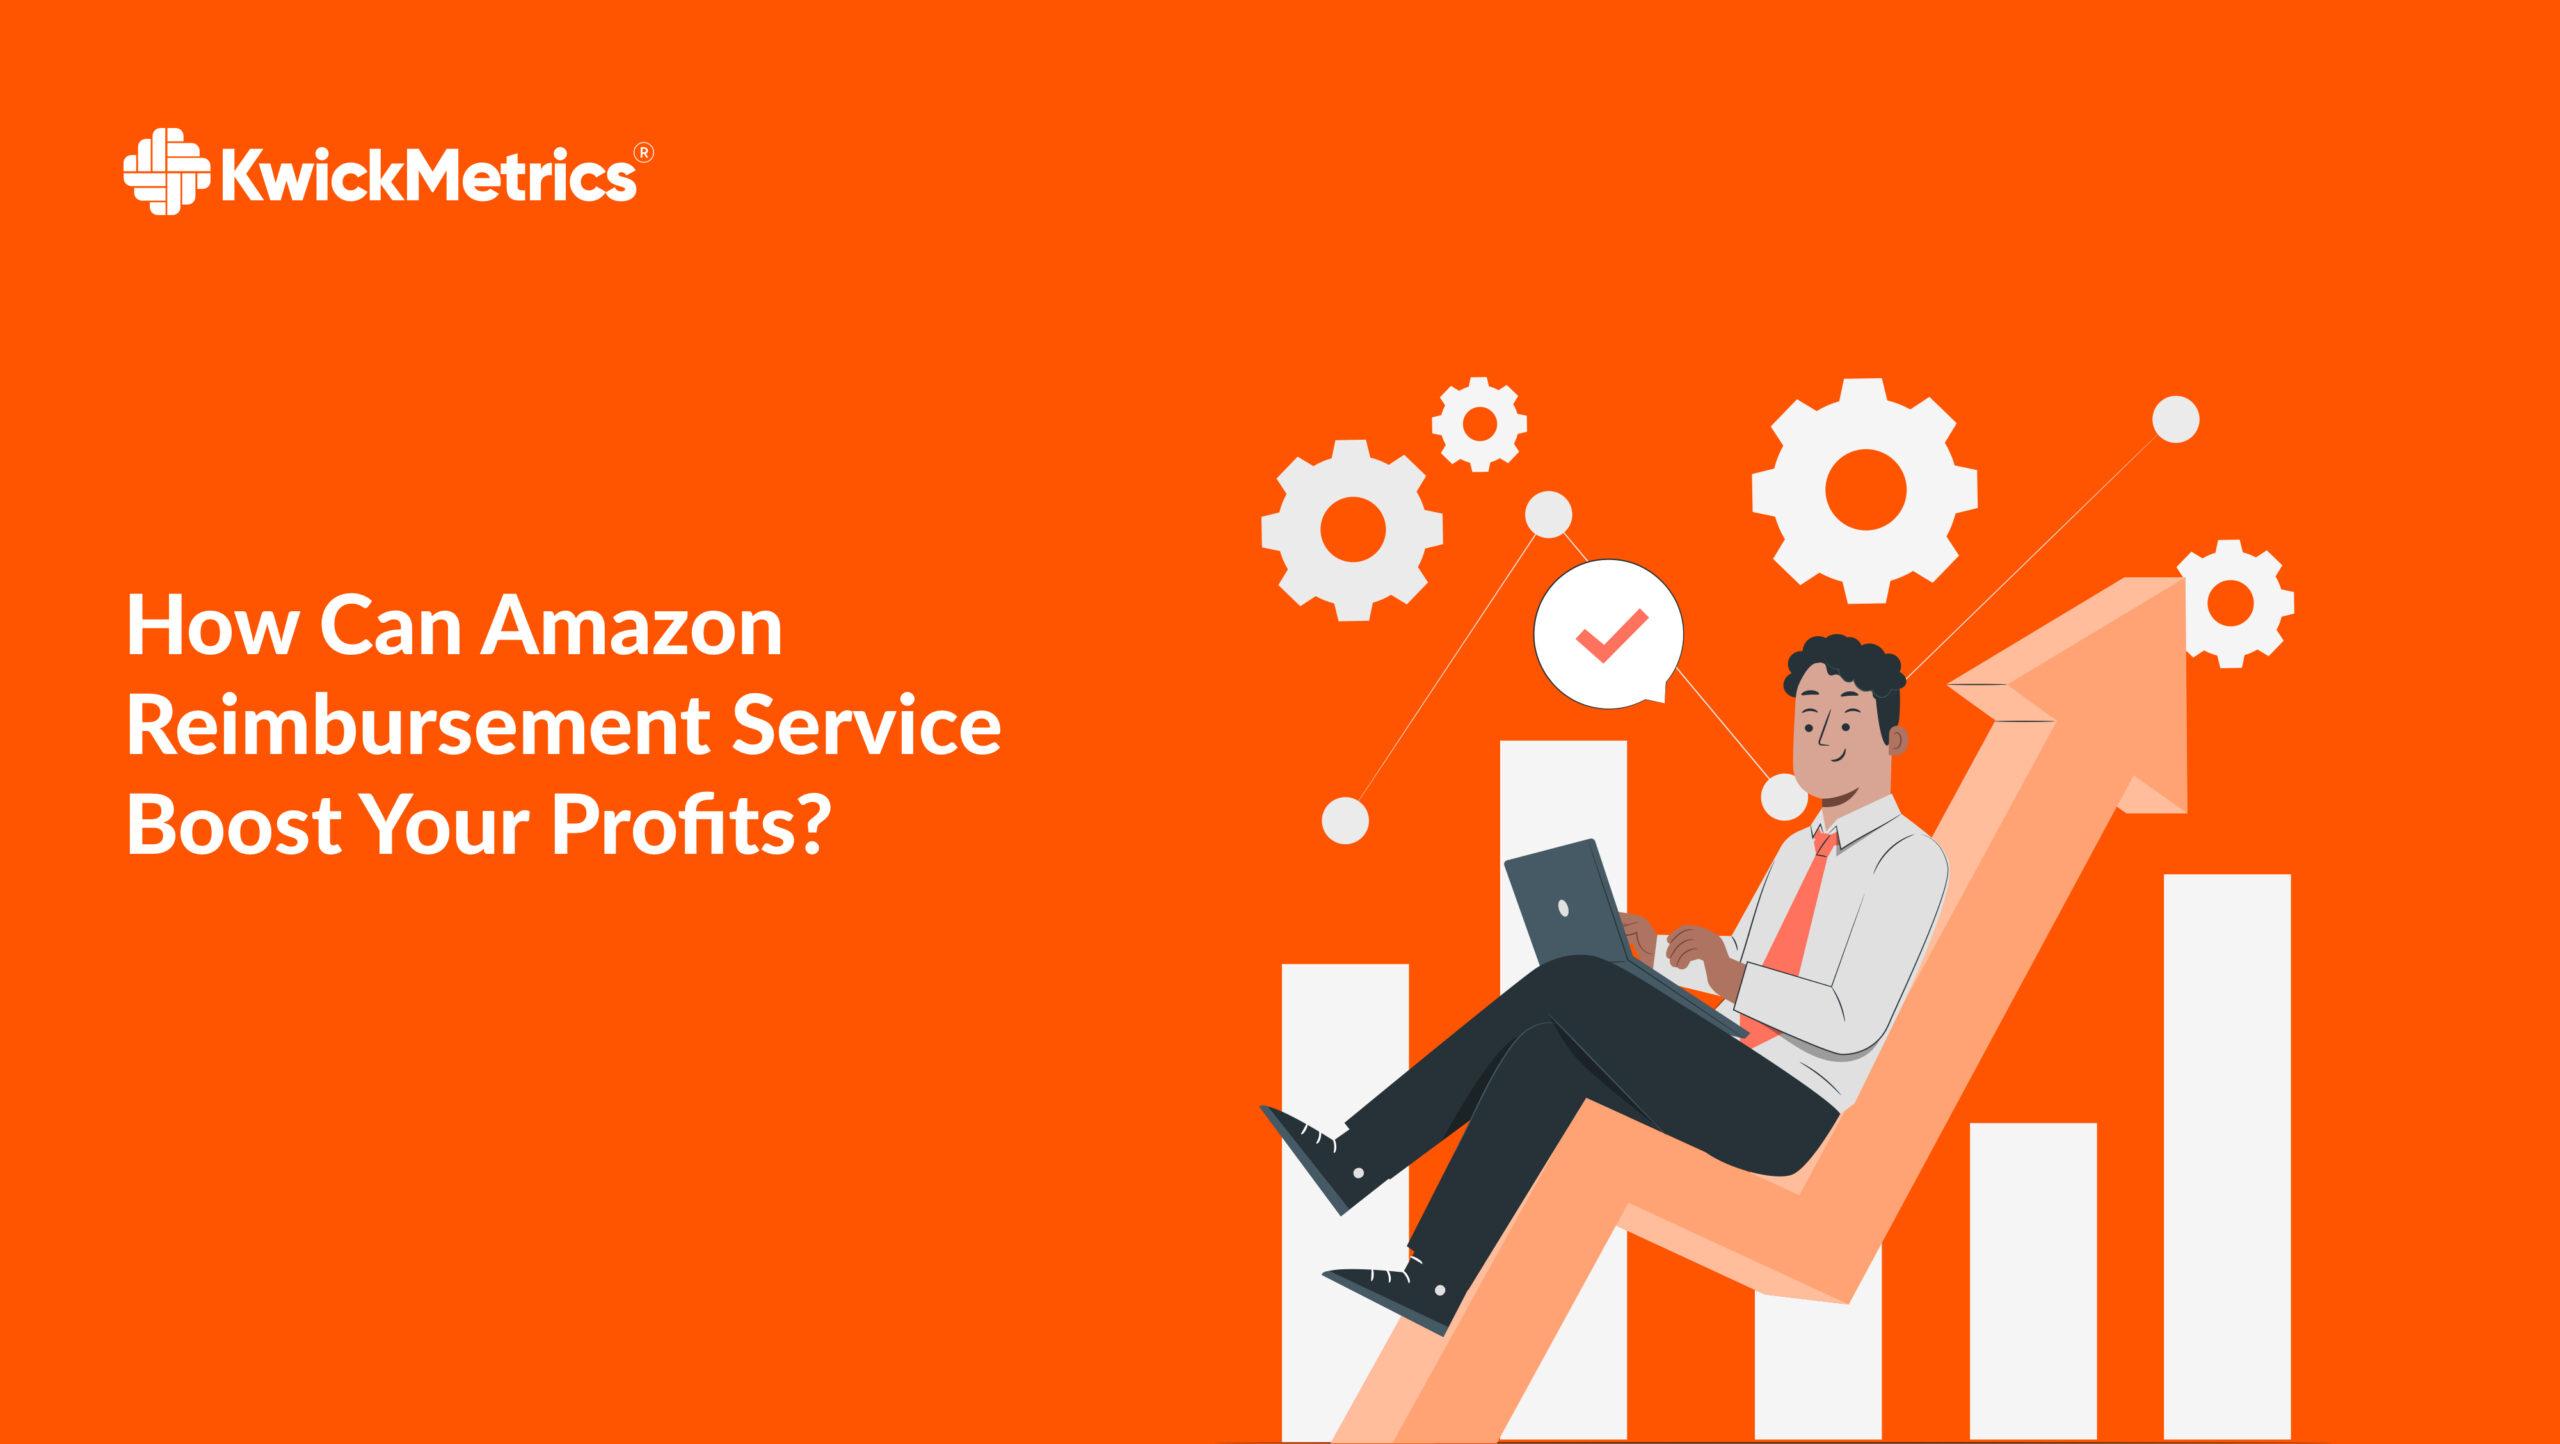 amazon-reimbursement-service-maximize-profits